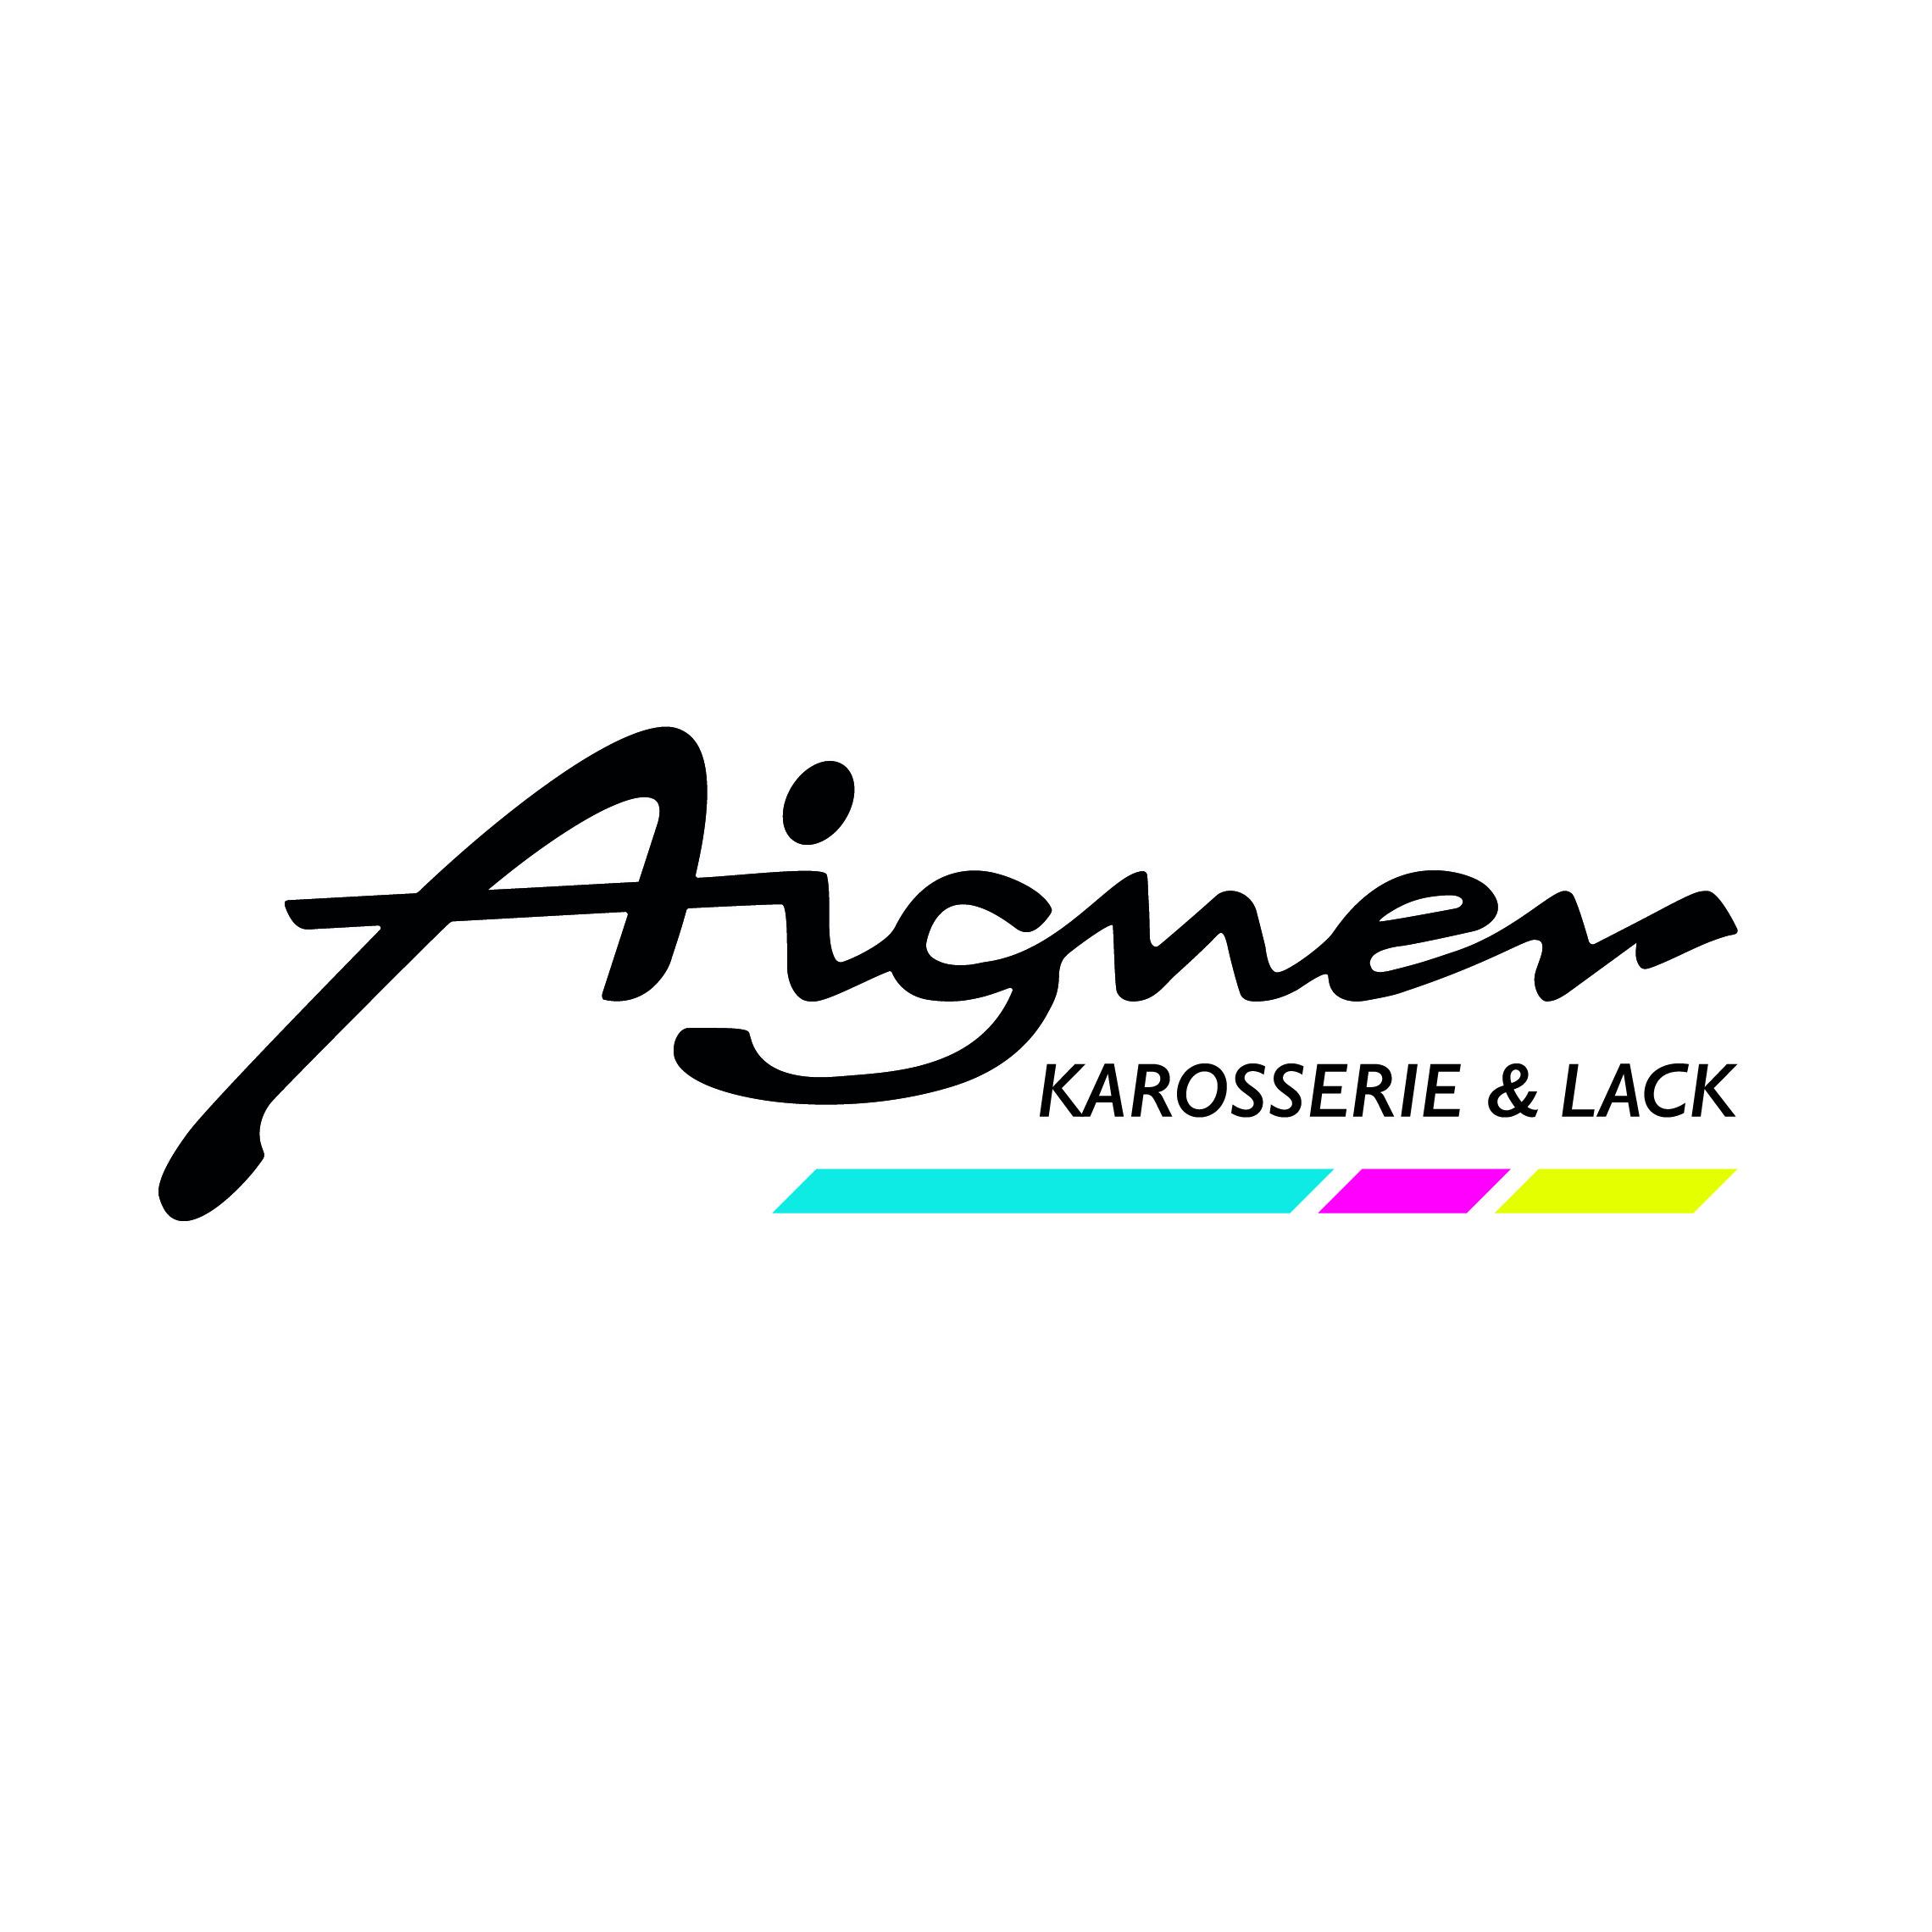 AIGNER - Karosserie & Lack GmbH in 6020 Innsbruck Logo AIGNER - Karosserie & Lack GmbH Innsbruck 0512 3441350